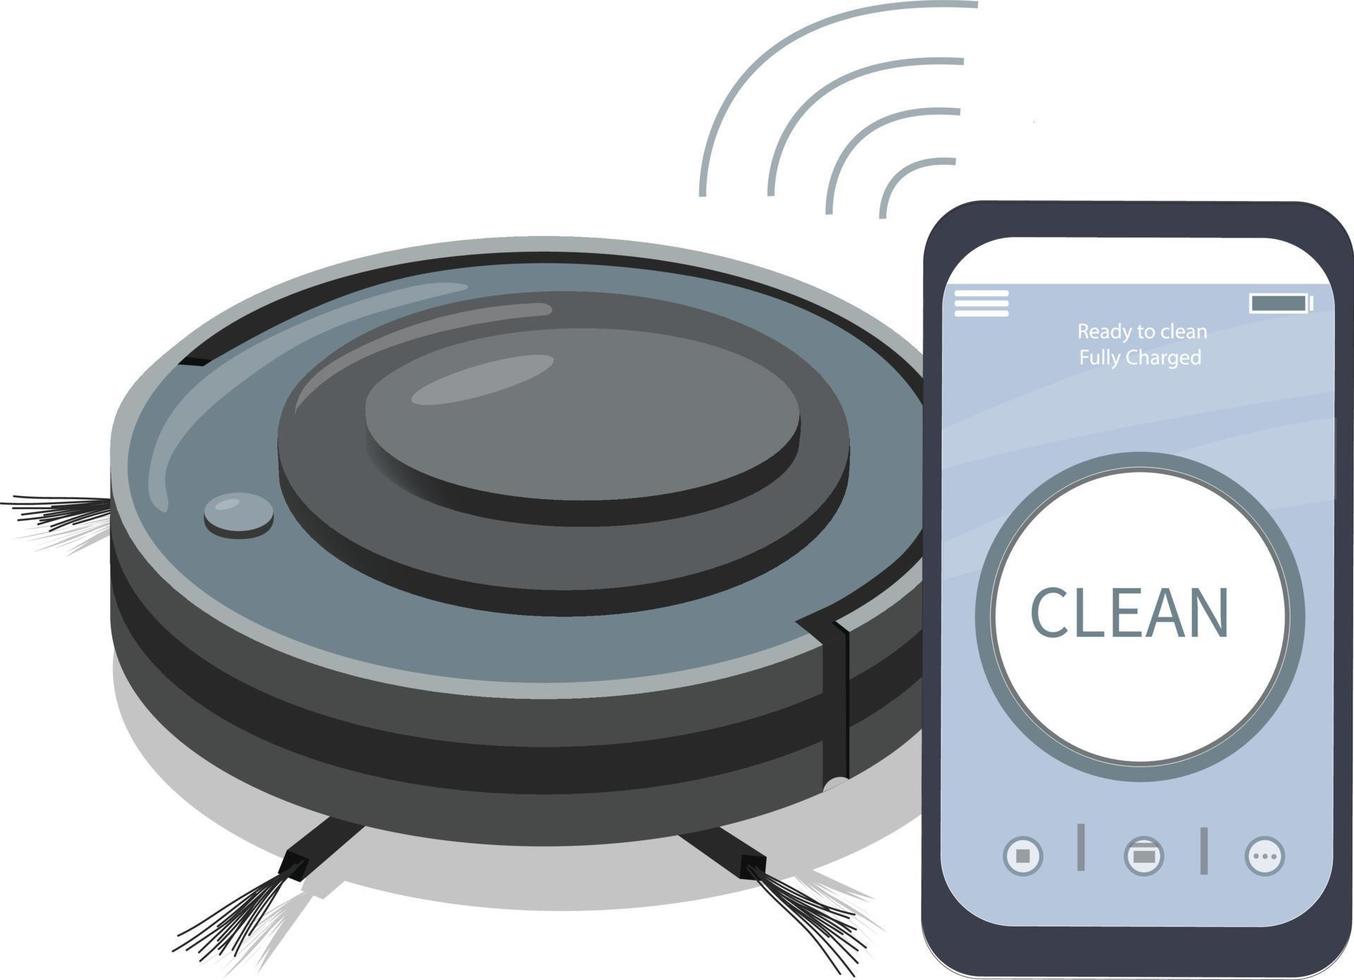 una aplicación para teléfonos inteligentes que controla una aspiradora robot. electrodomésticos modernos para la limpieza de apartamentos. electrodomésticos inteligentes. conexión inalámbrica. vector